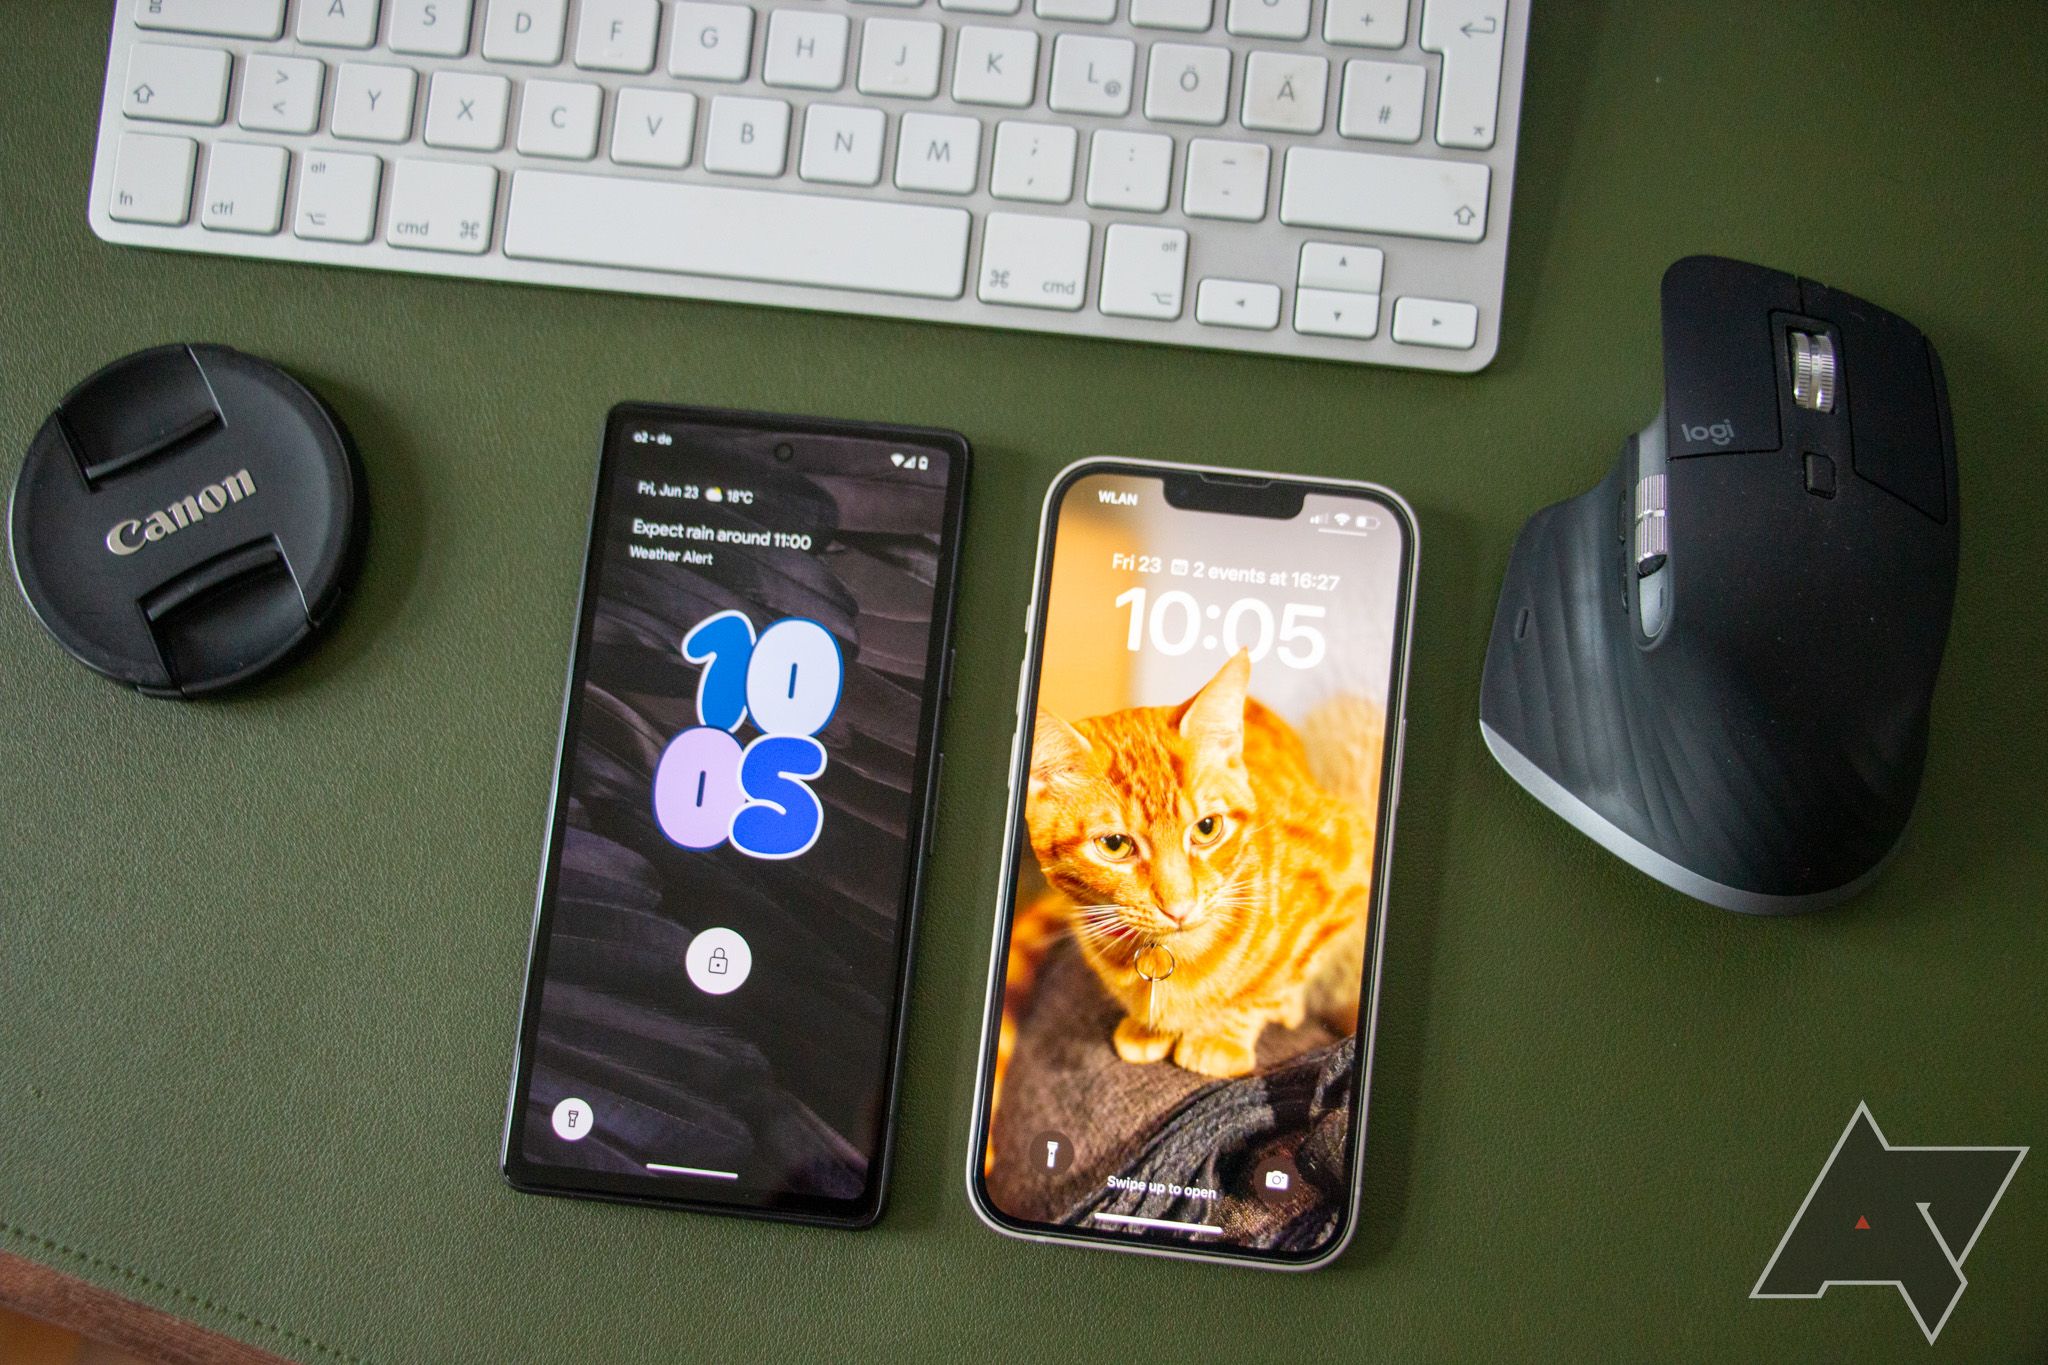 Um Google Pixel 7a e um iPhone 13 estão lado a lado em uma superfície de couro verde, com uma tampa de câmera Canon, um teclado Apple Magic e um mouse Logitech artisticamente dispostos ao redor deles